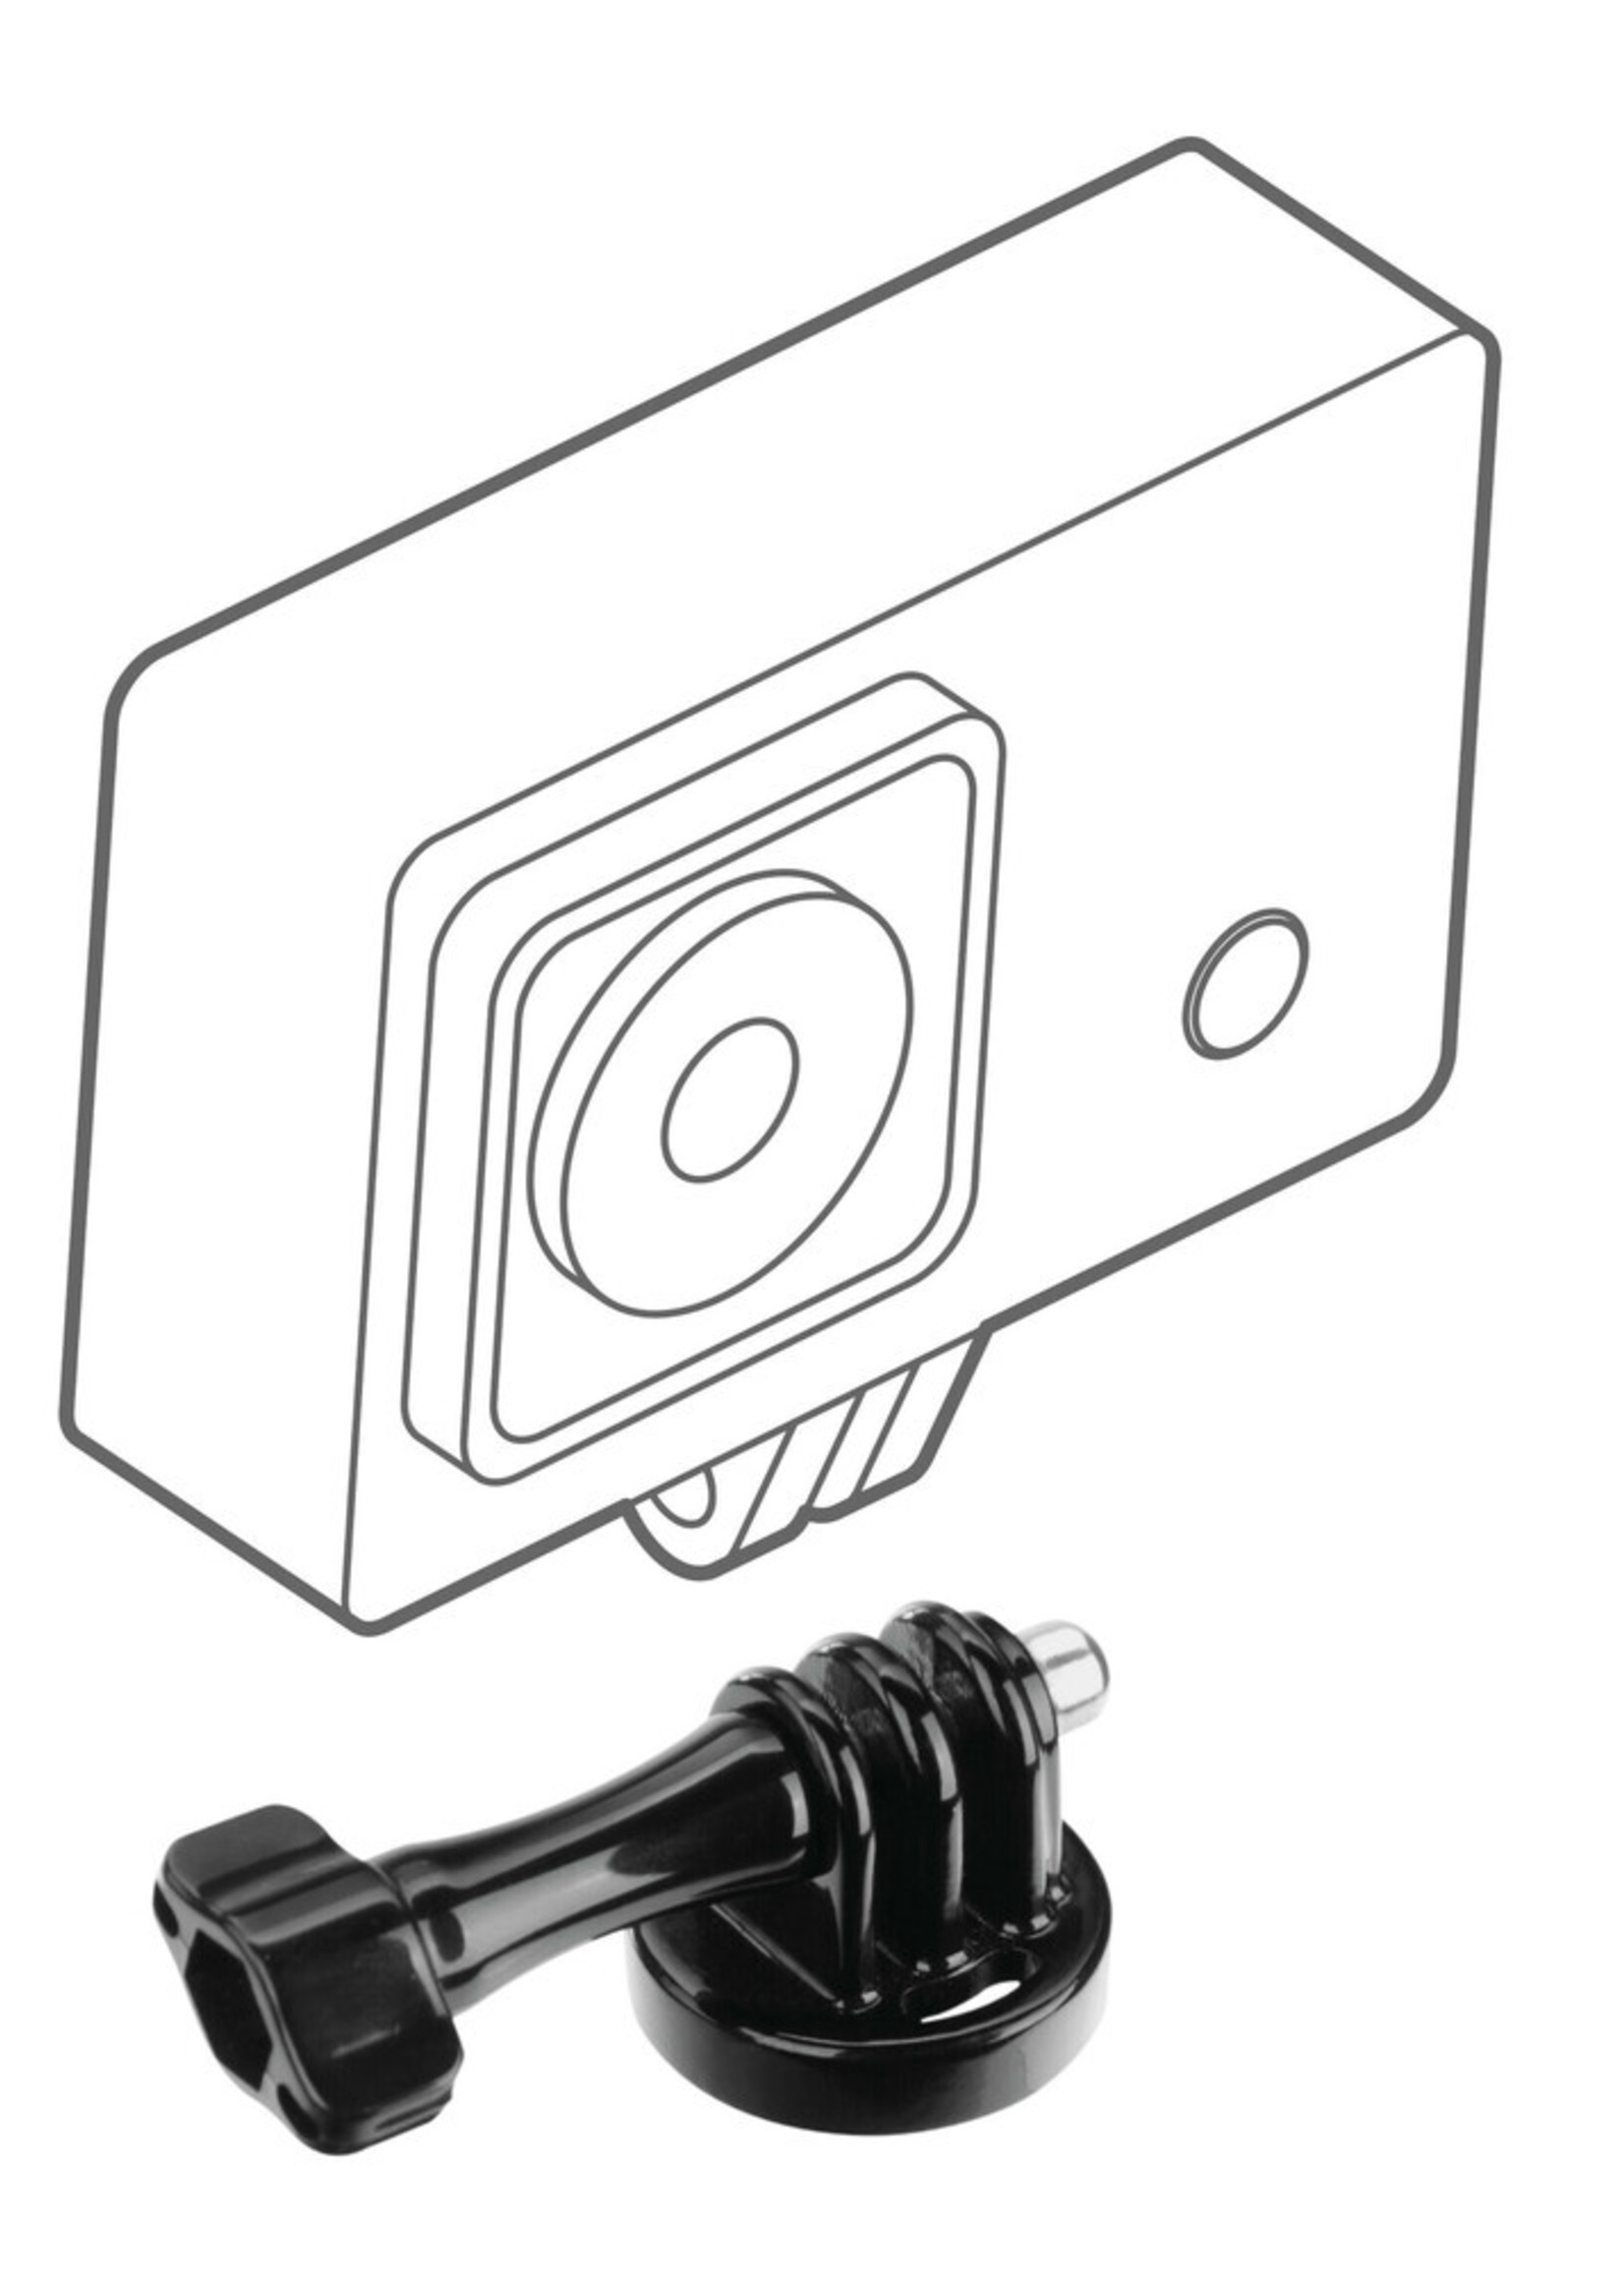 Optiline Action Cam, bevestigingsbasis voor action cam